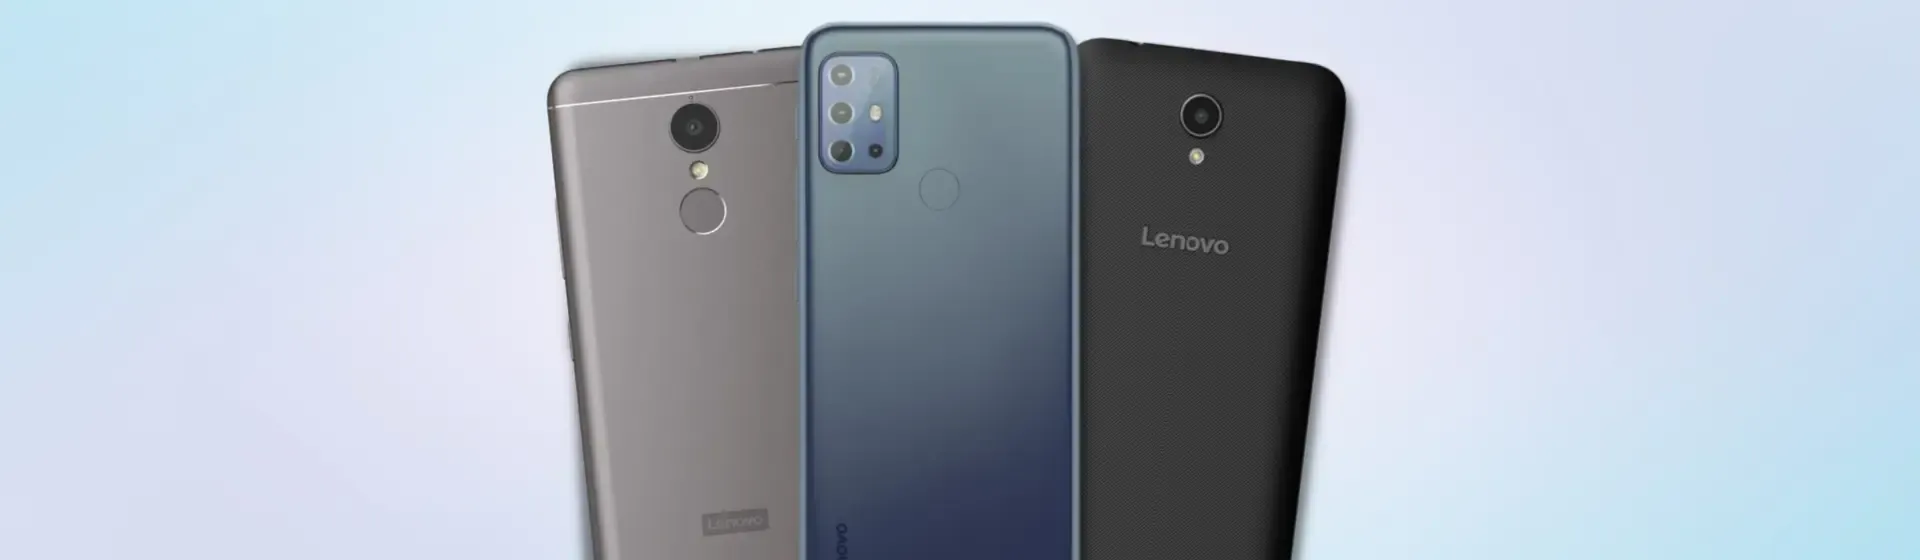 Trio de celulares Lenovo em fundo azul